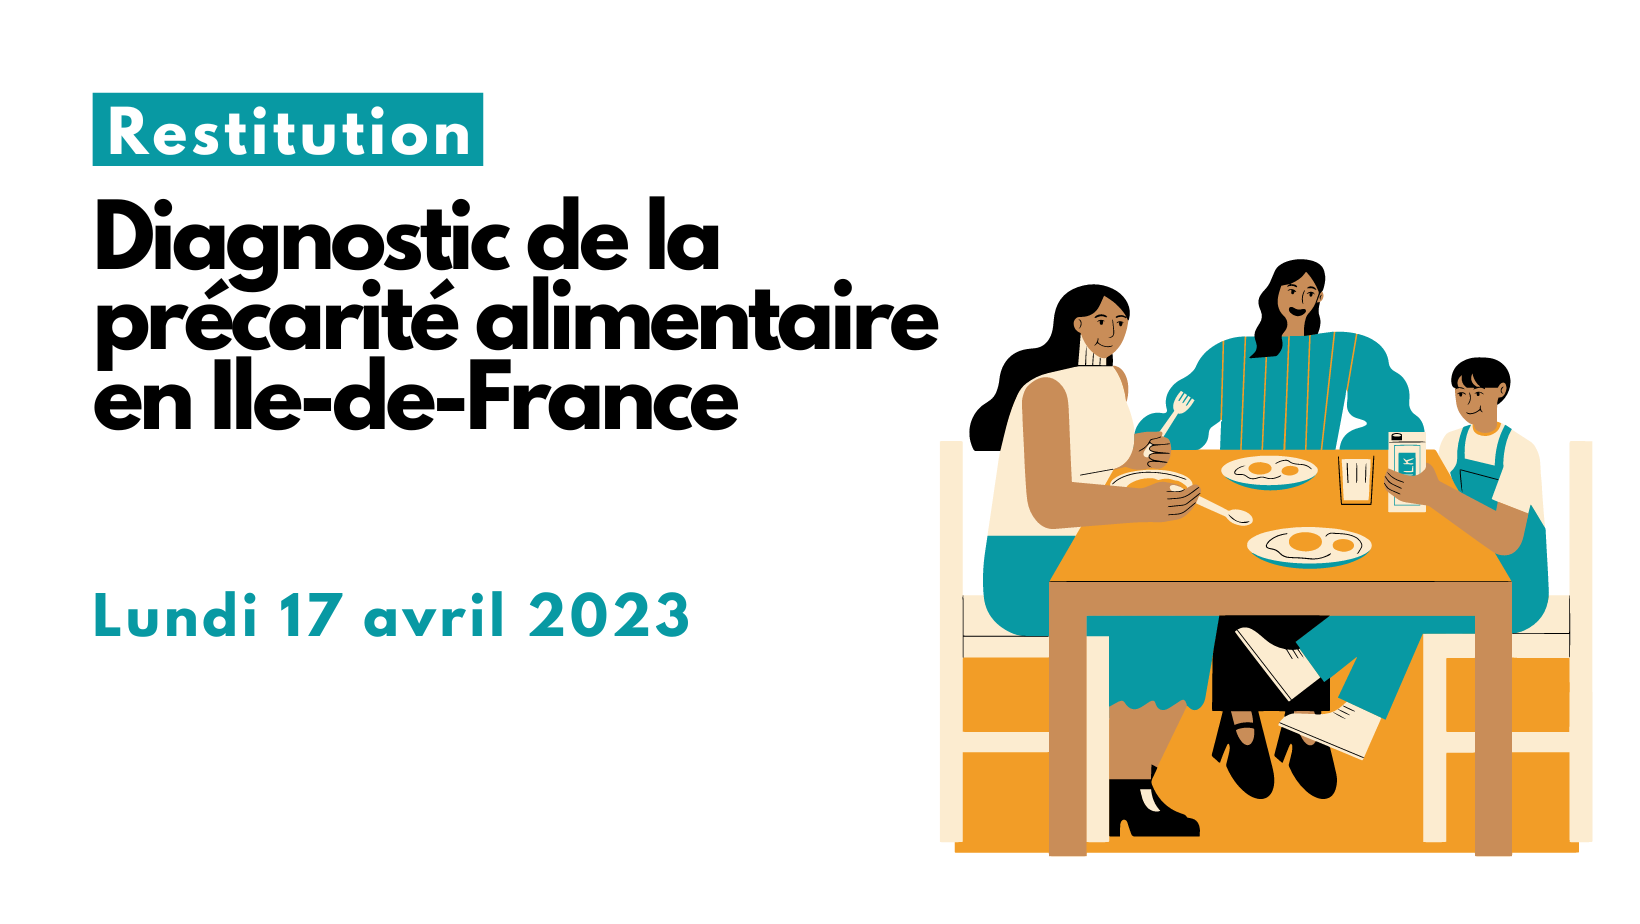 Restitution du Diagnostic de la précarité alimentaire en Ile-de-France, le lundi 17 avril 2023